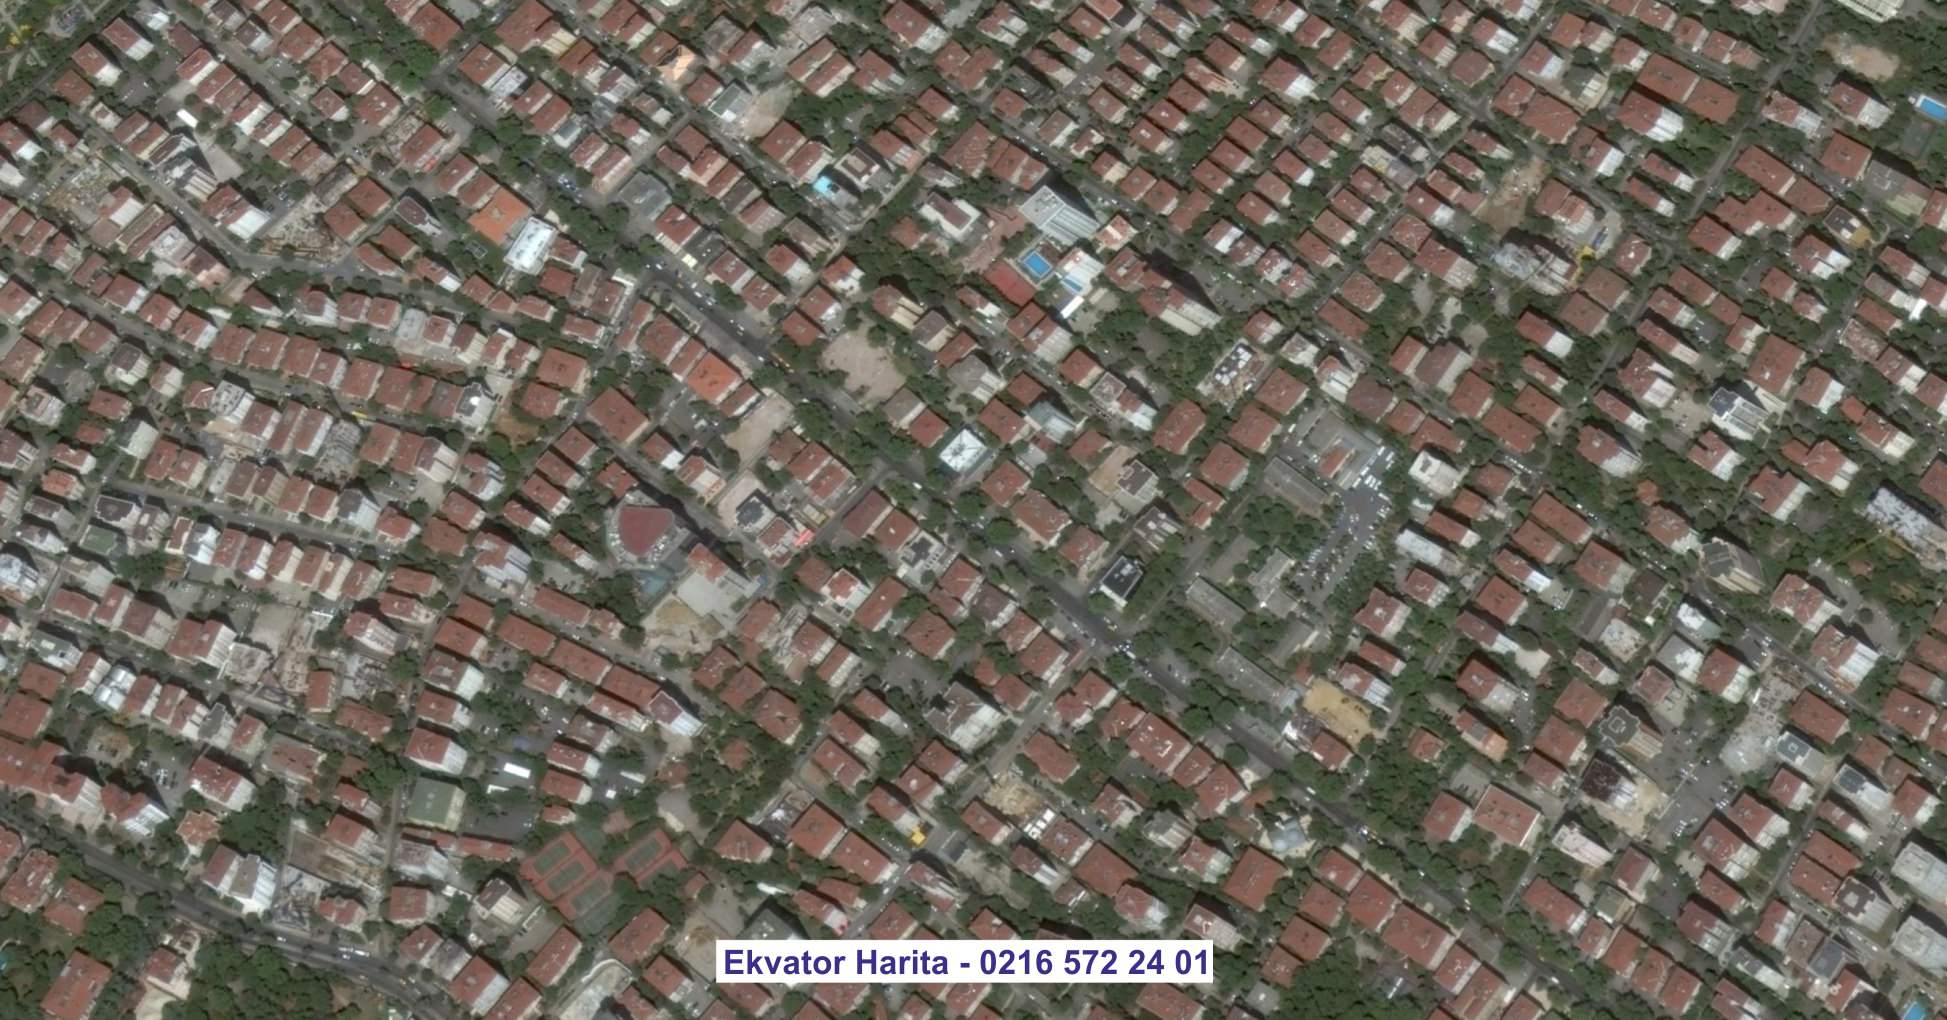 Bahçelievler Uydu Görüntüsü Örnek Fotoğrafı